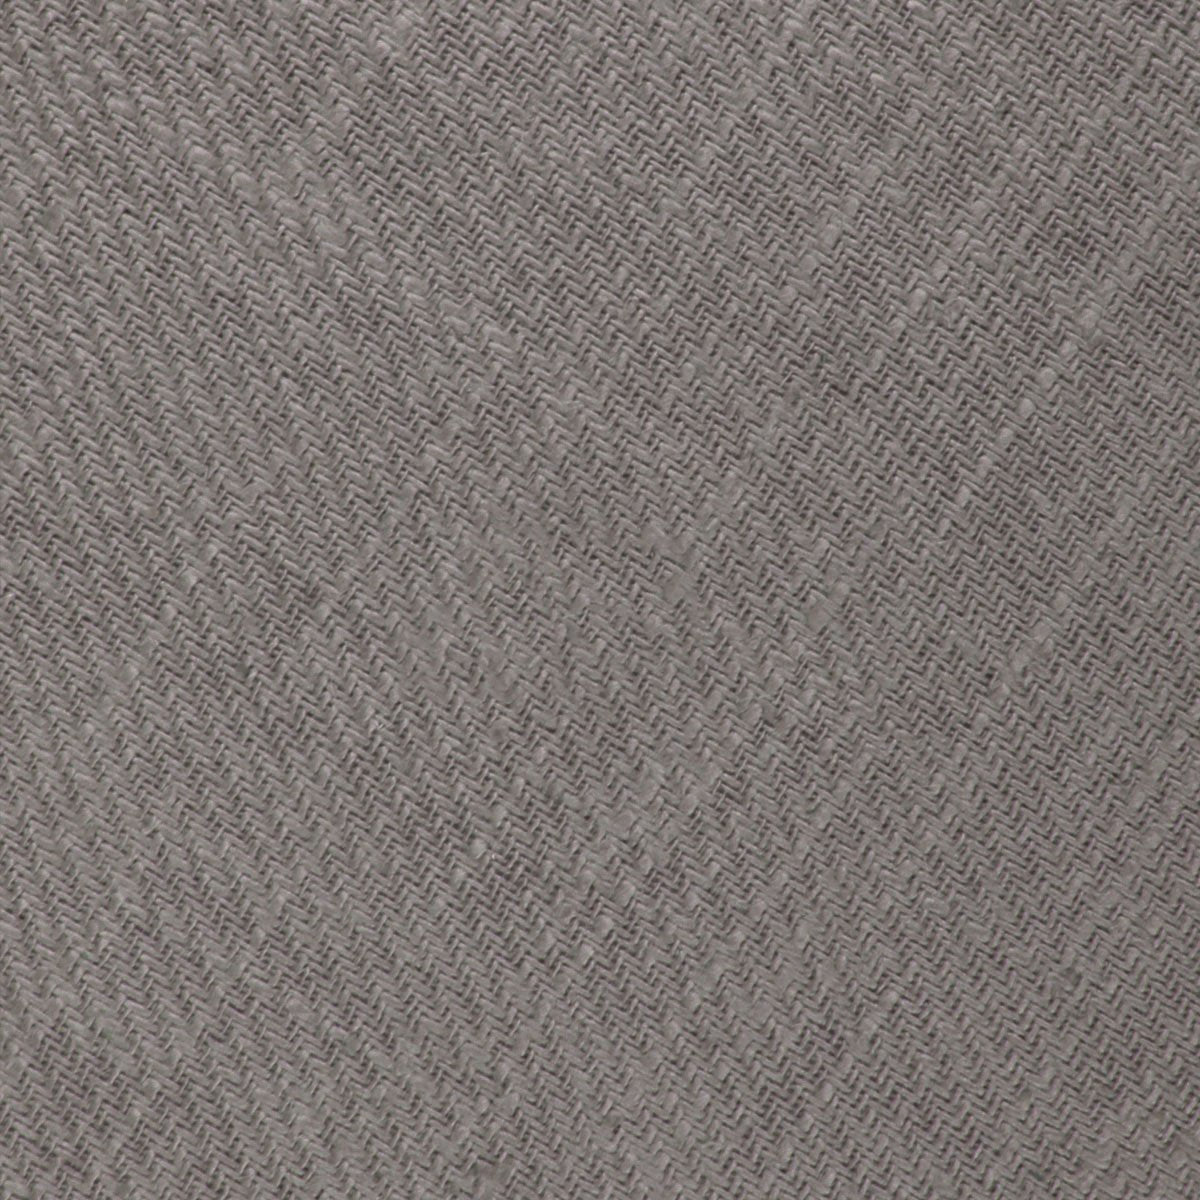 Stone Grey Portobello Slub Linen Necktie Fabric